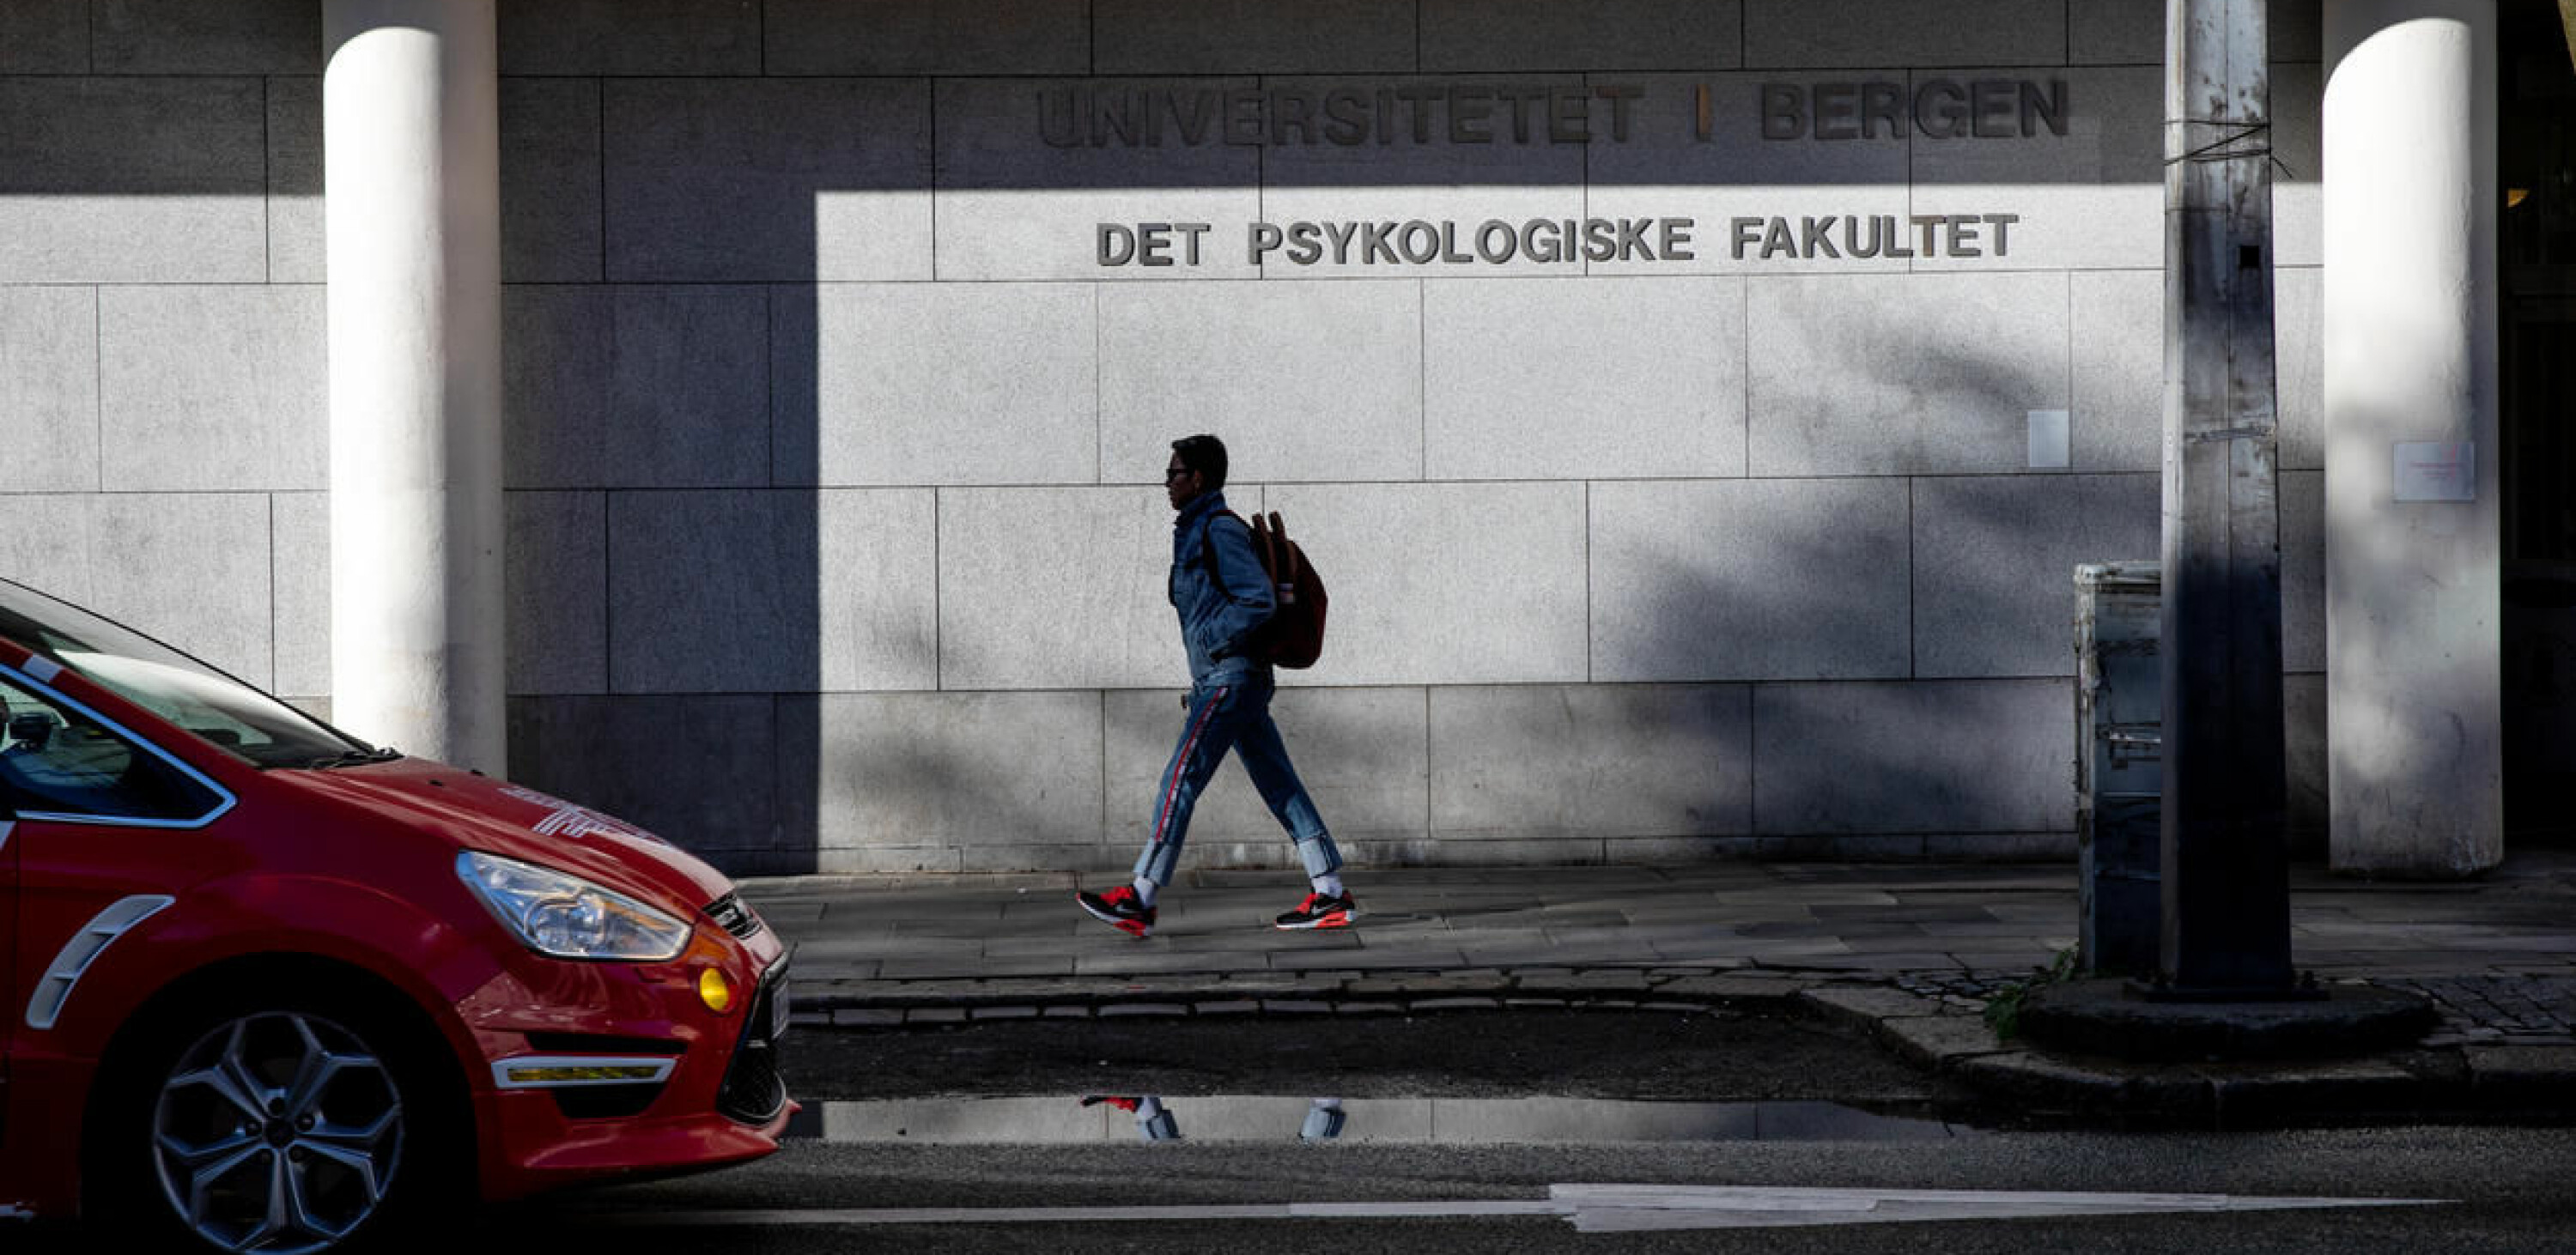 Den tyske studenten mener systemet for varsling ved Universitetet i Bergen må forbedres og tilliten til det gjenopprettes. Dette er et illustrasjonsfoto av Det psykologiske fakultet.